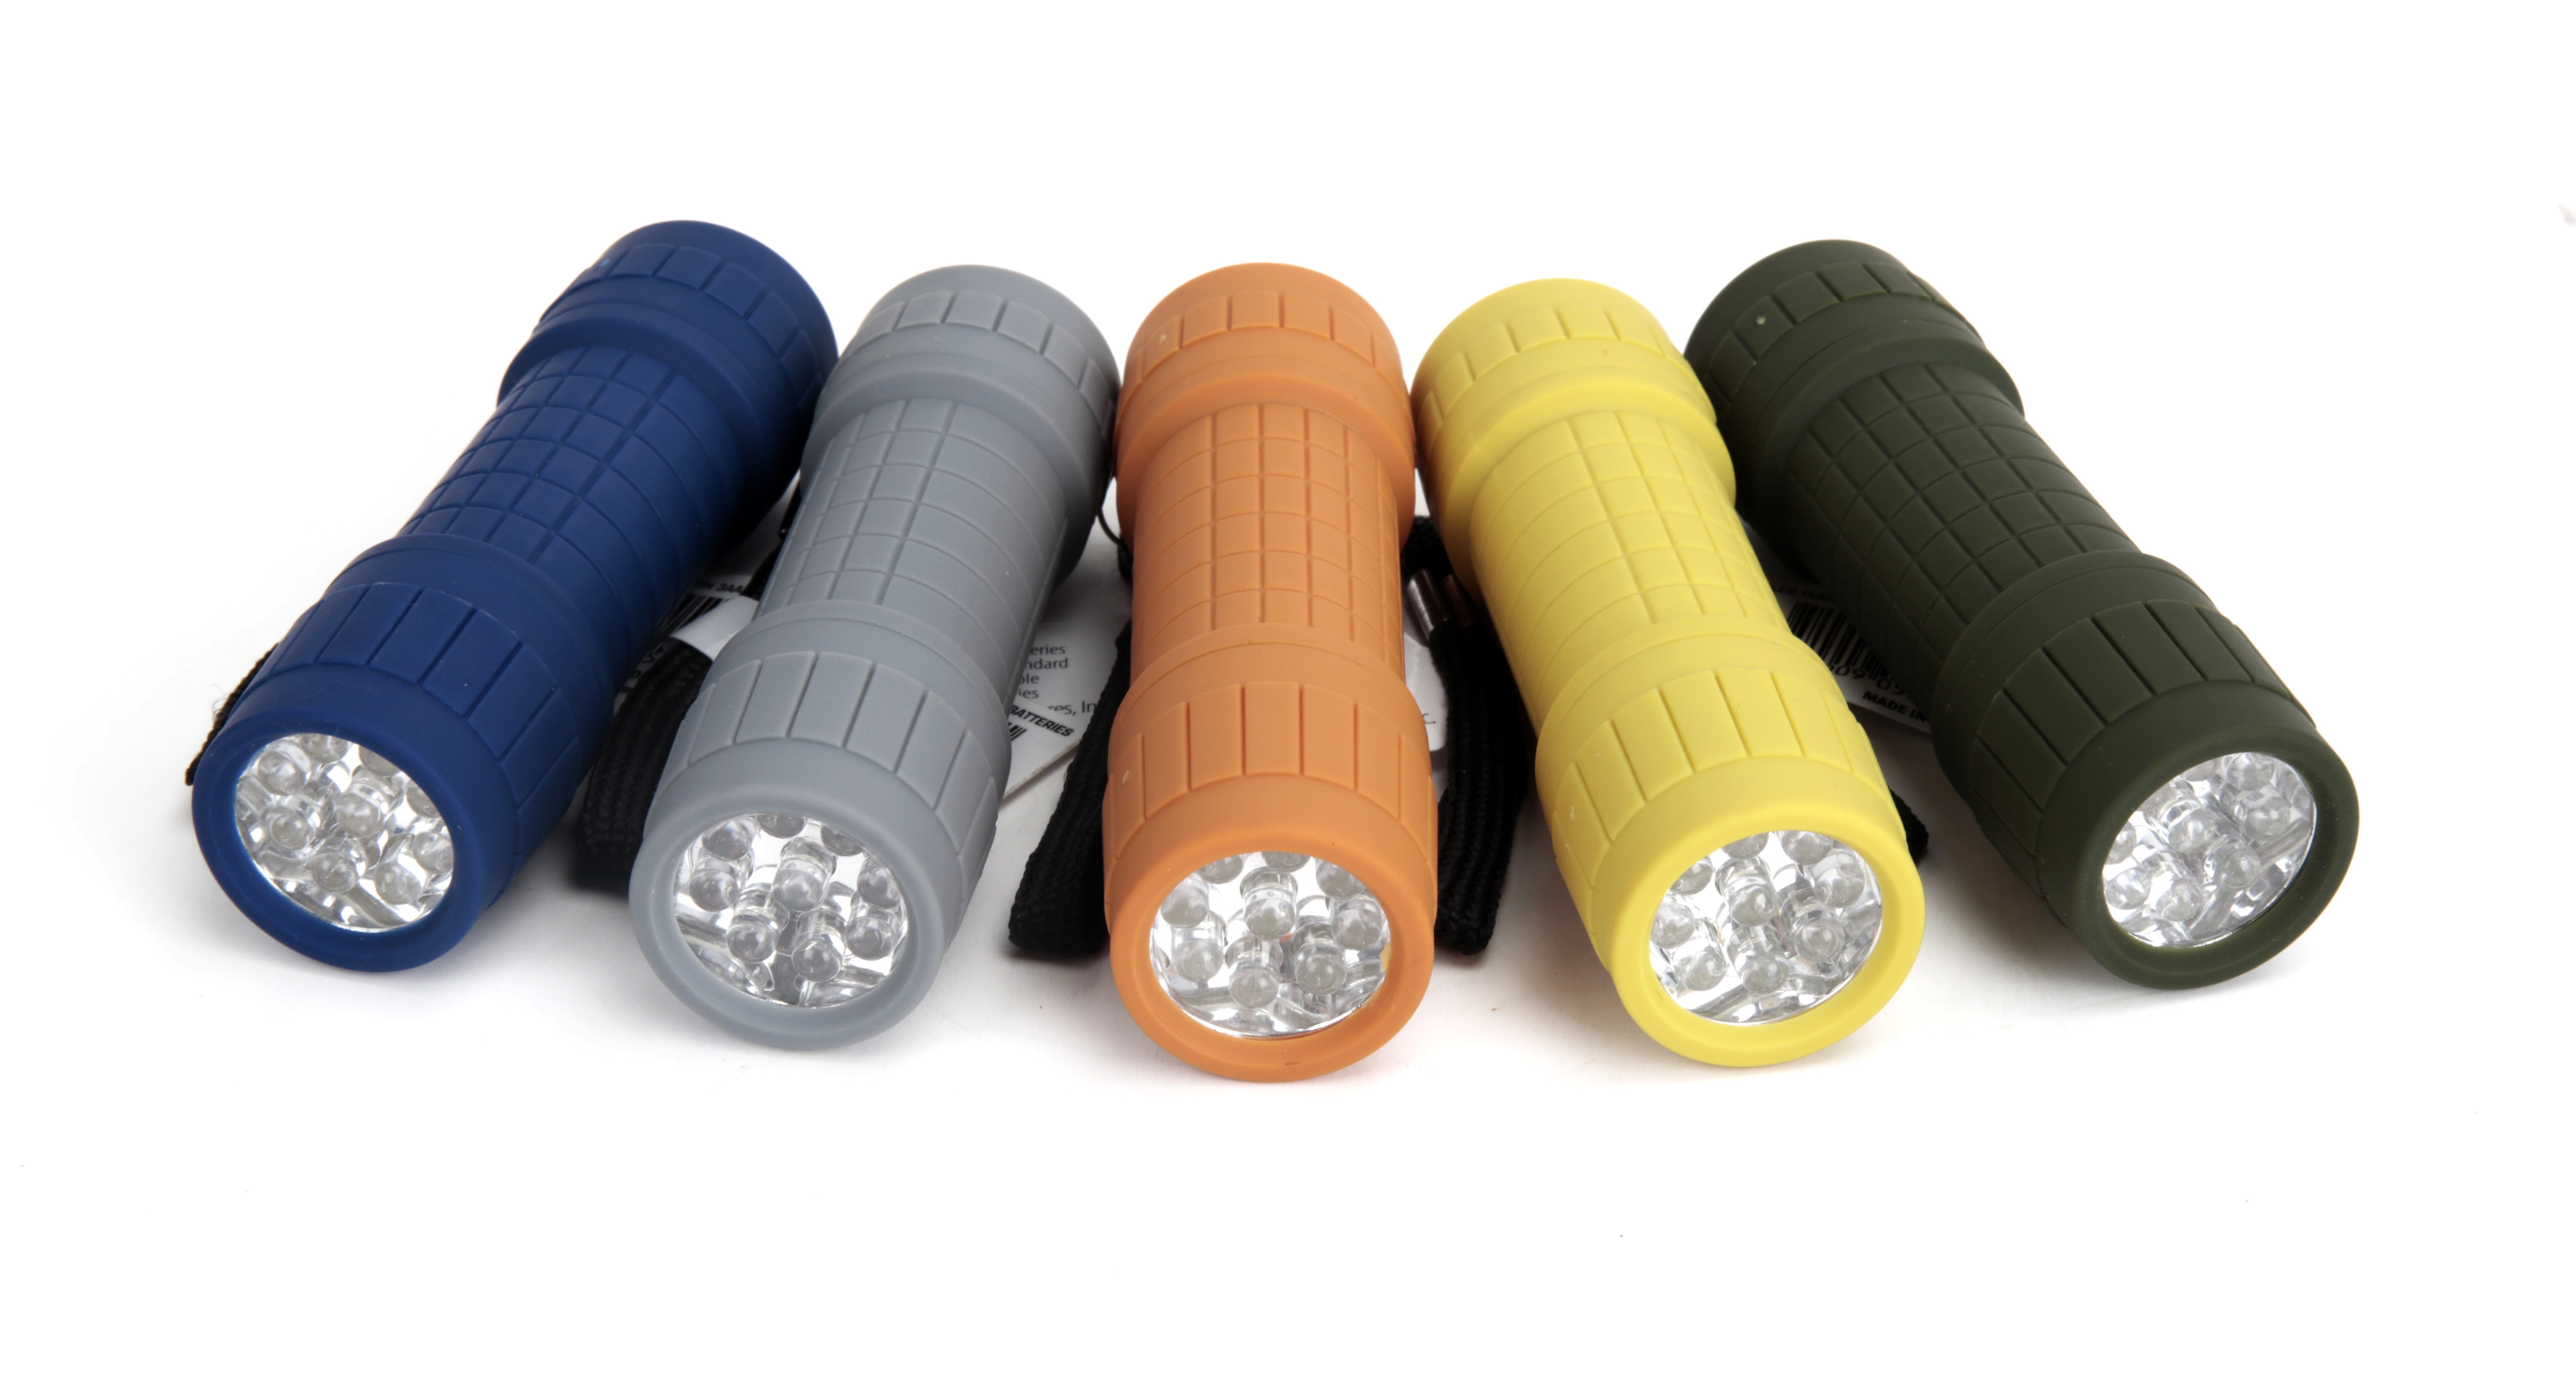 Ozark Trail 10-Pack, 9-LED Mini Flashlight for Camping